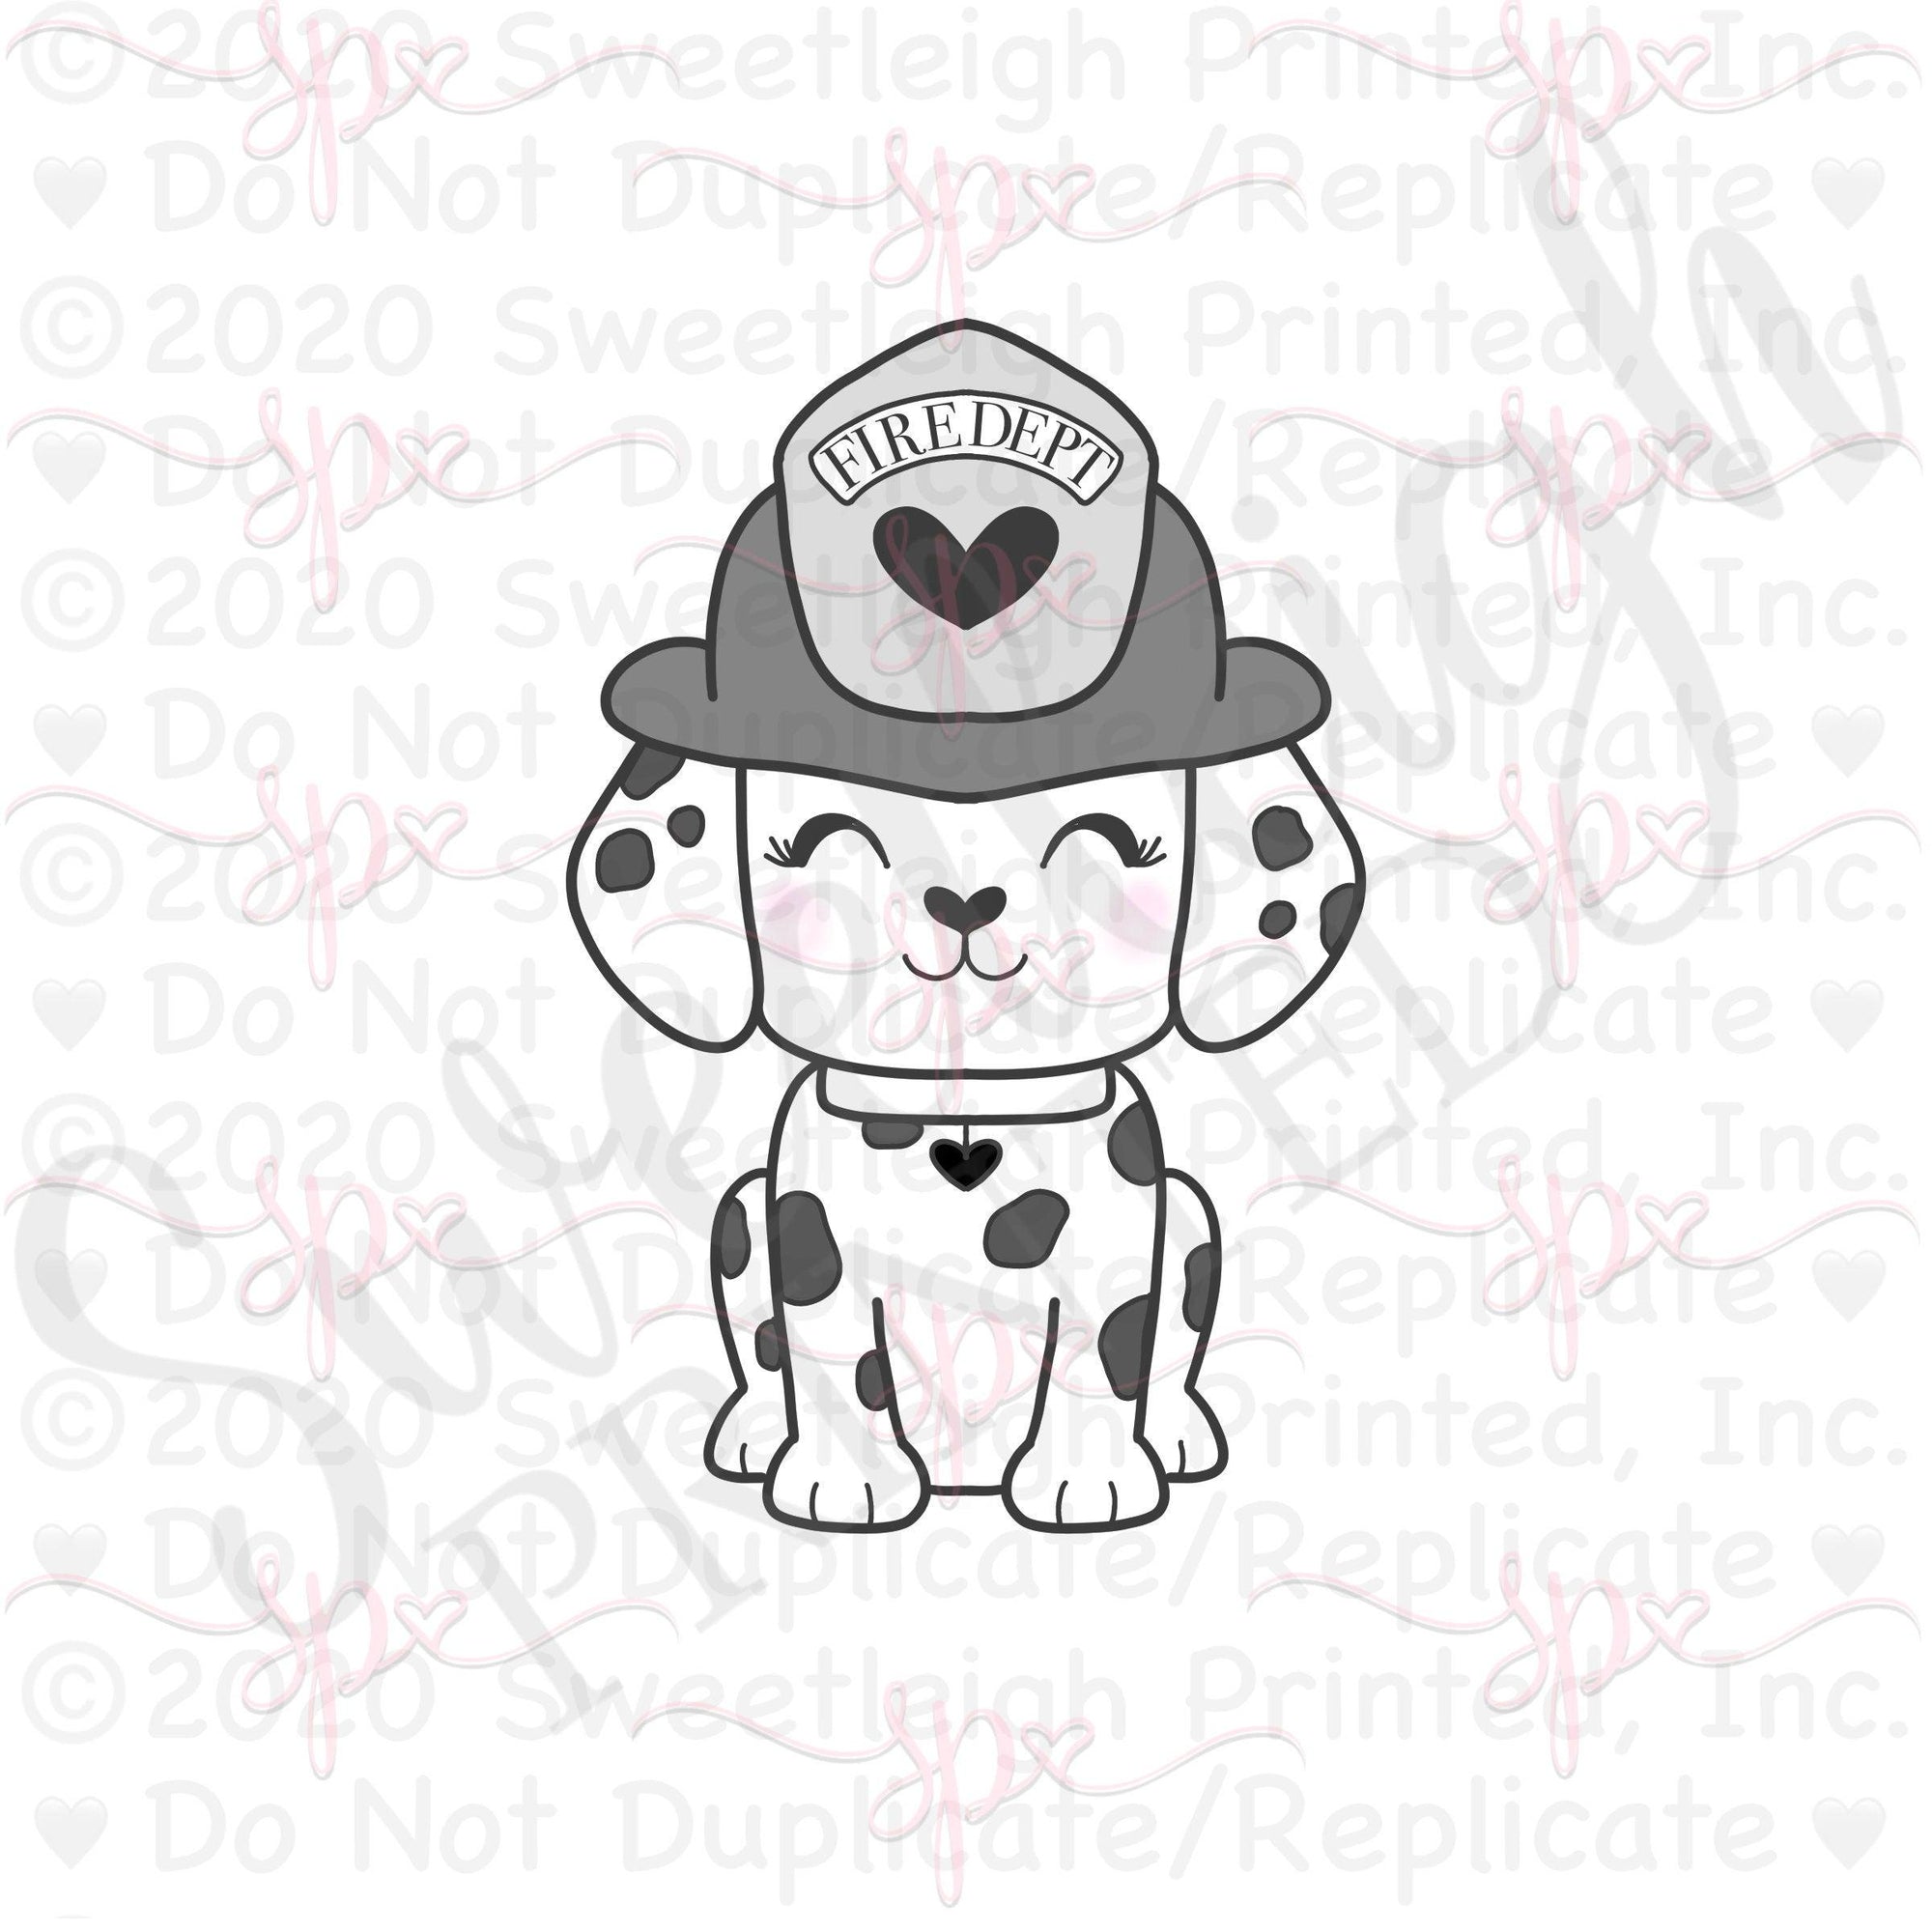 Firefighter Dalmatian Cookie Cutter - Sweetleigh 